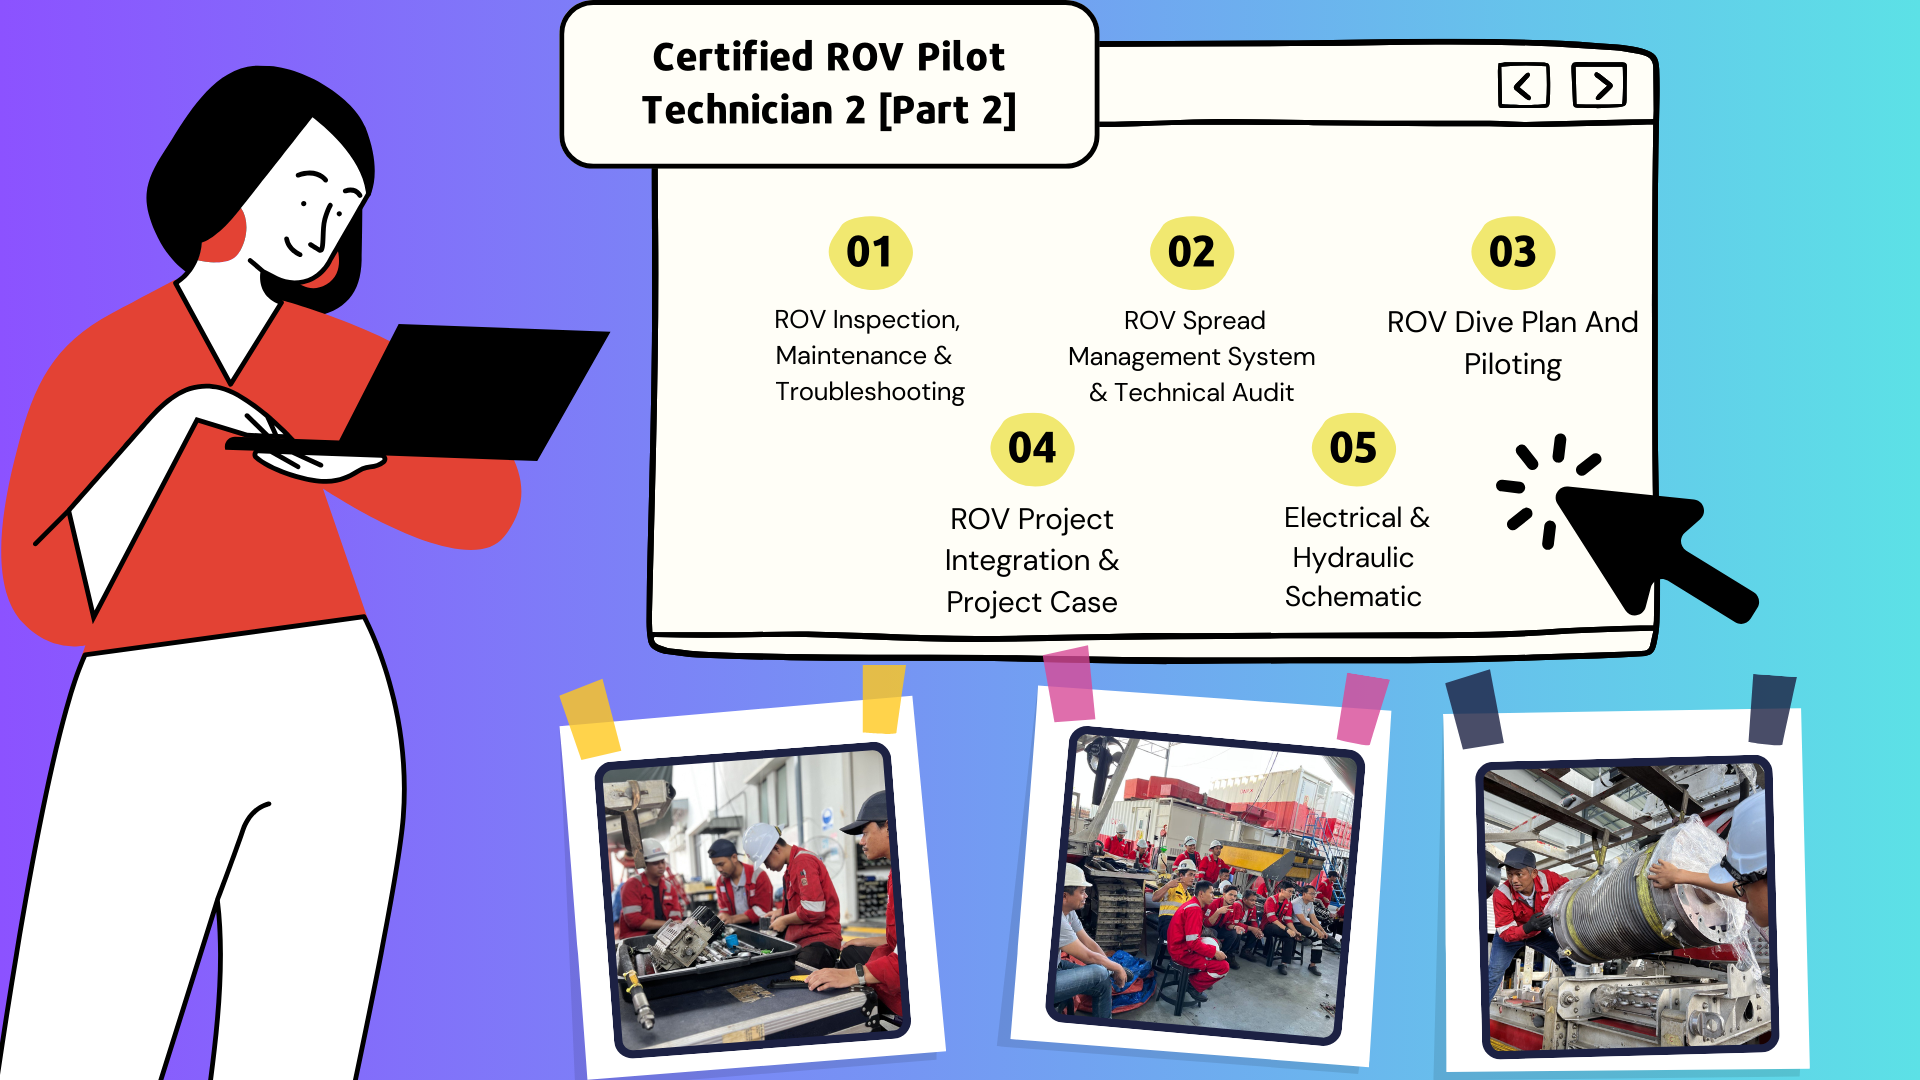 Certified ROV Pilot Technician 2 [Part 2]